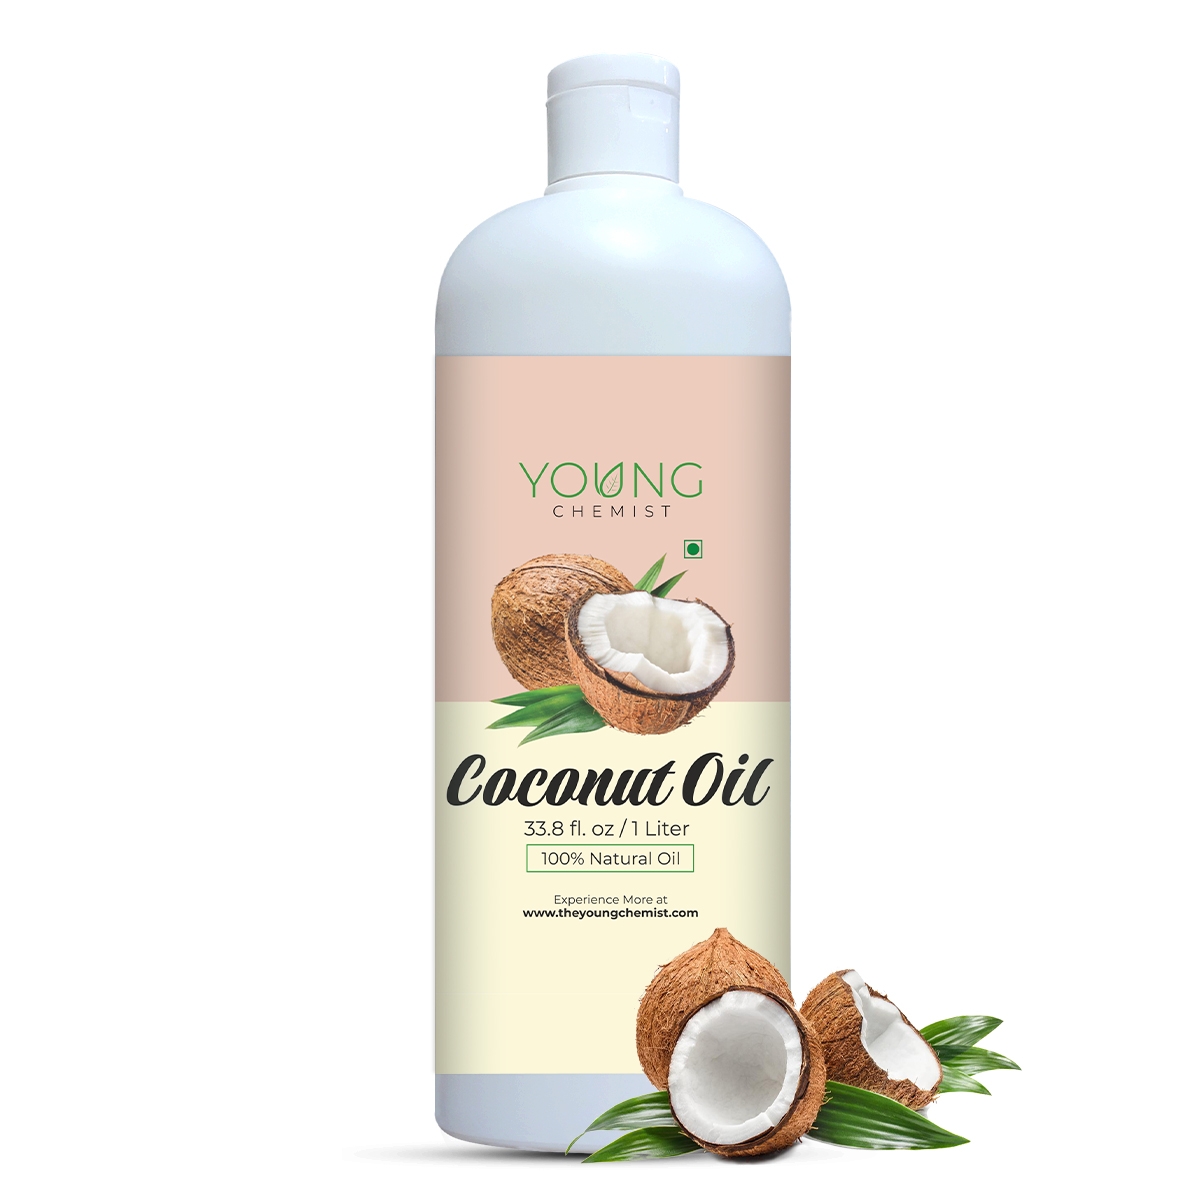 Coconut Oil - Delhi - Delhi ID1553193 2